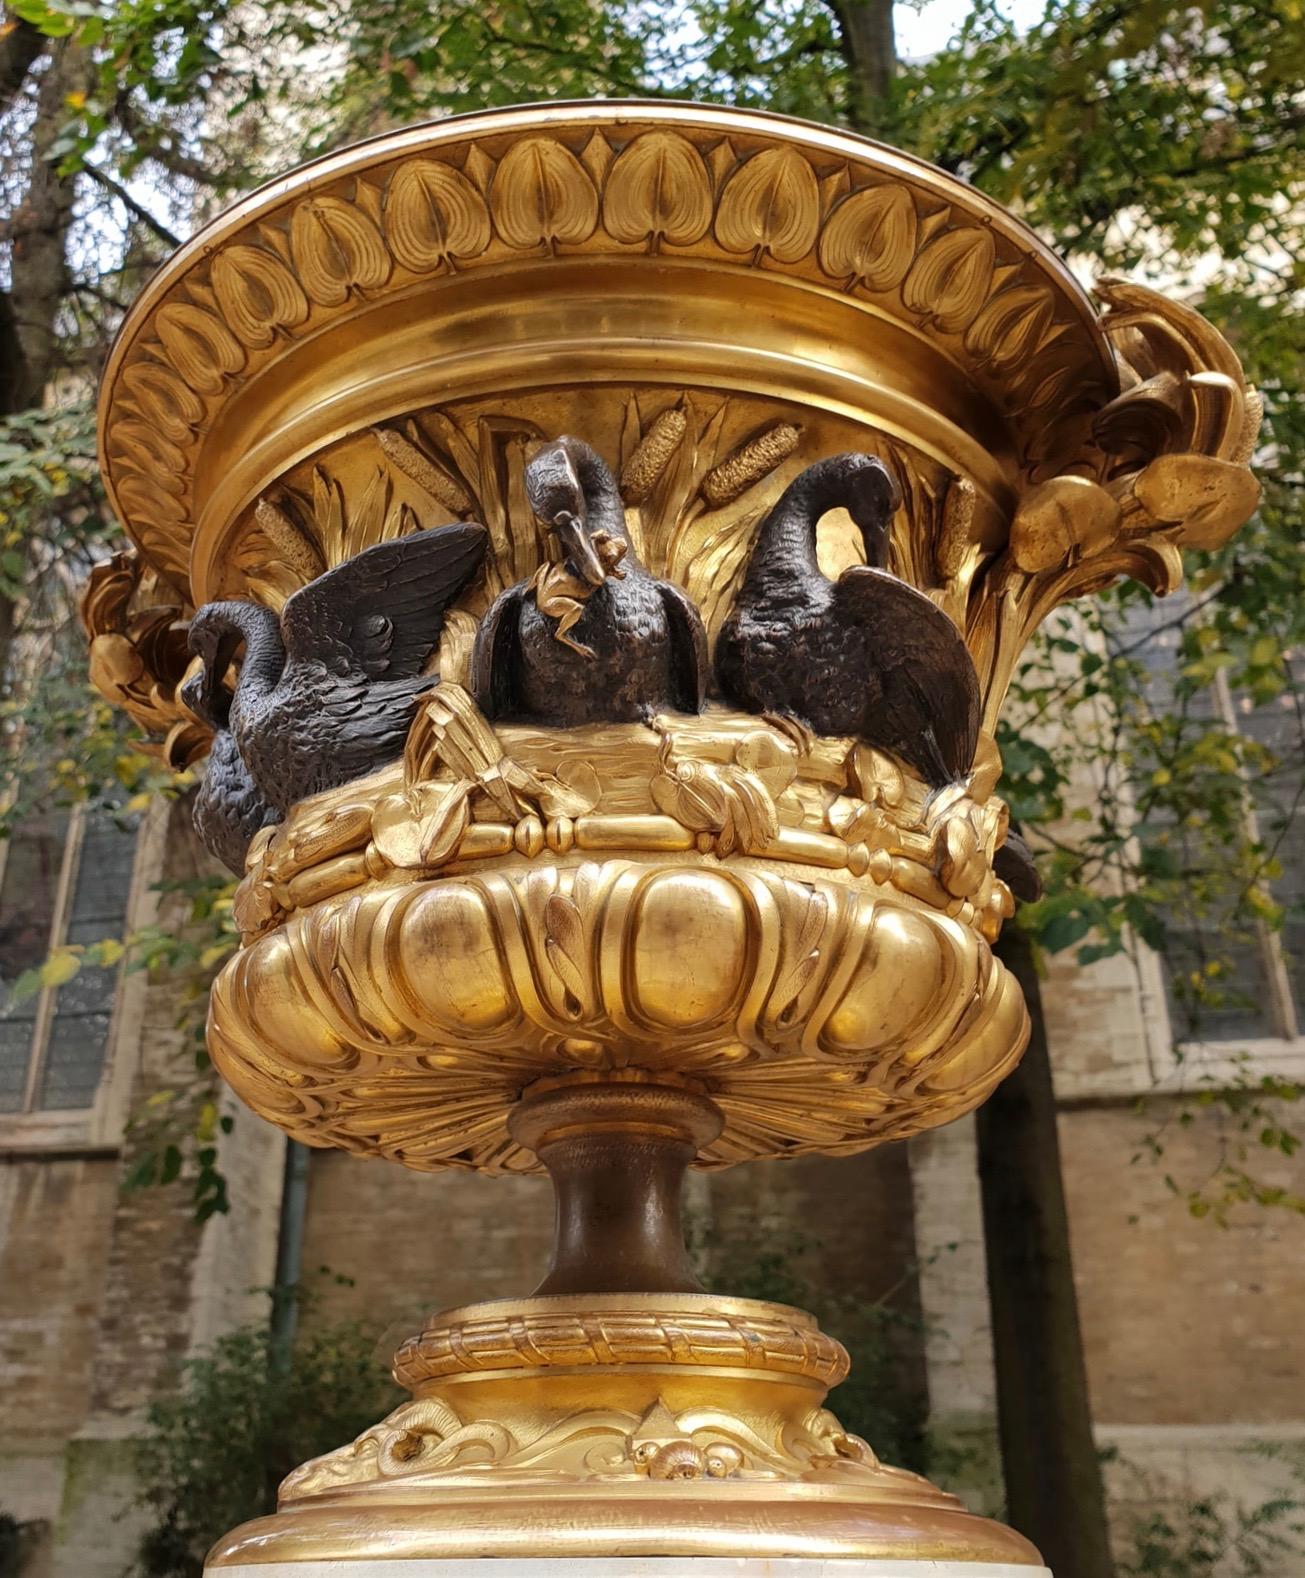 Eine beeindruckende ornamentale Vase aus Ormolu in Campana-Form. Das Bronzegefäß ruht auf einem geformten konkaven Giebel aus Achatstein mit einem byzantinischen kreuzförmigen Sockel.
Der vergoldete, konkave Fuß der Vase zeigt Widderköpfe, die von